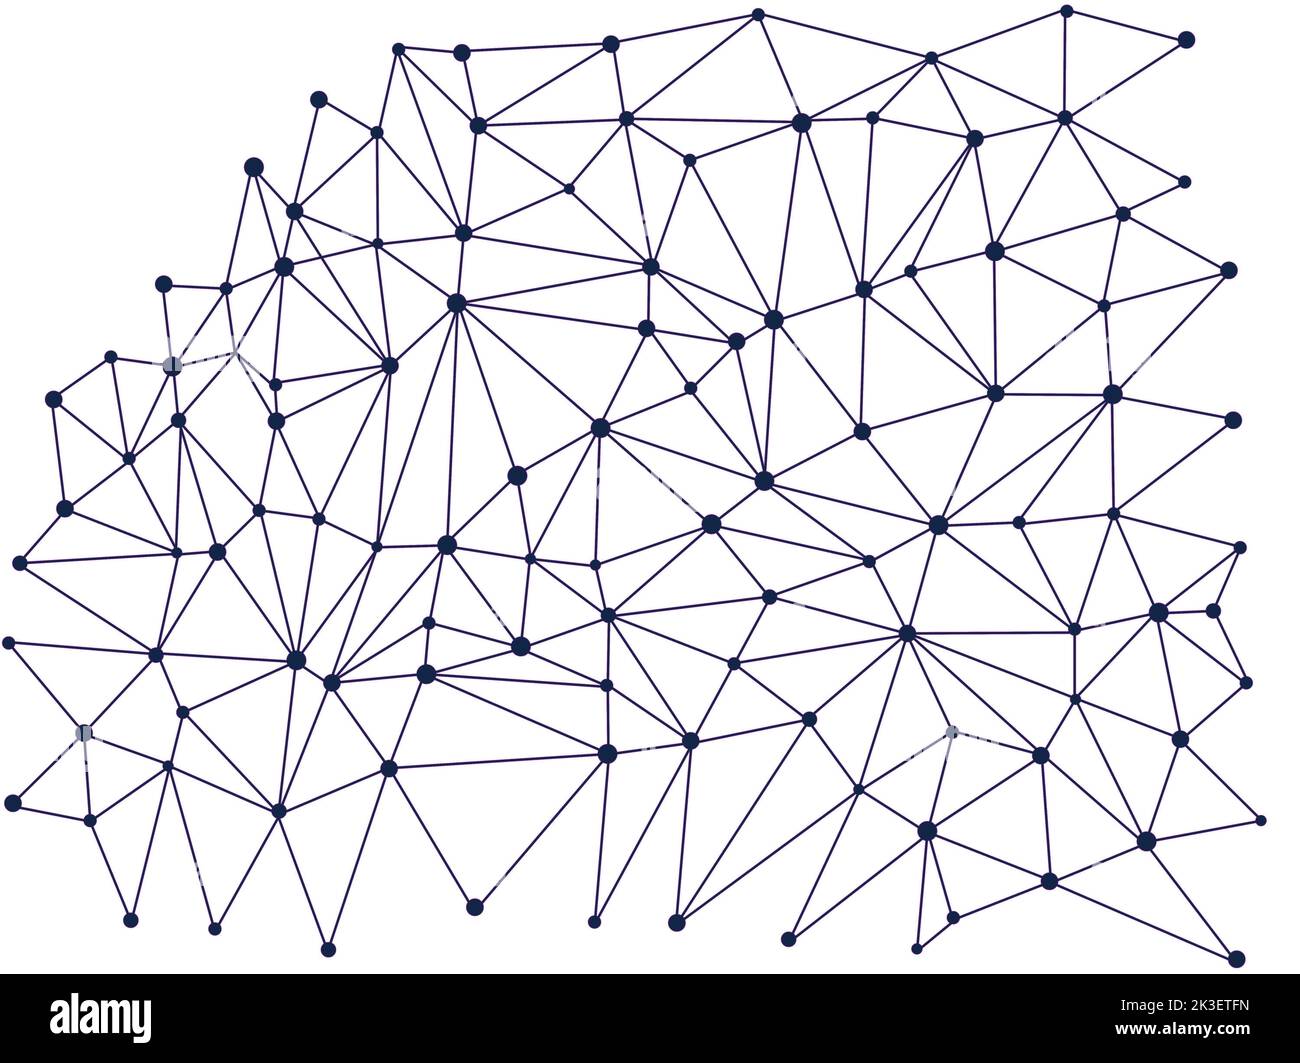 Linien mit Punkten, Segmente, die in einer grafischen Zeichnung verbunden sind. Geometrisches Punktmuster. Grafisches Element in Form von kleinen Punkten für Designer-Drucke. Abst Stockfoto